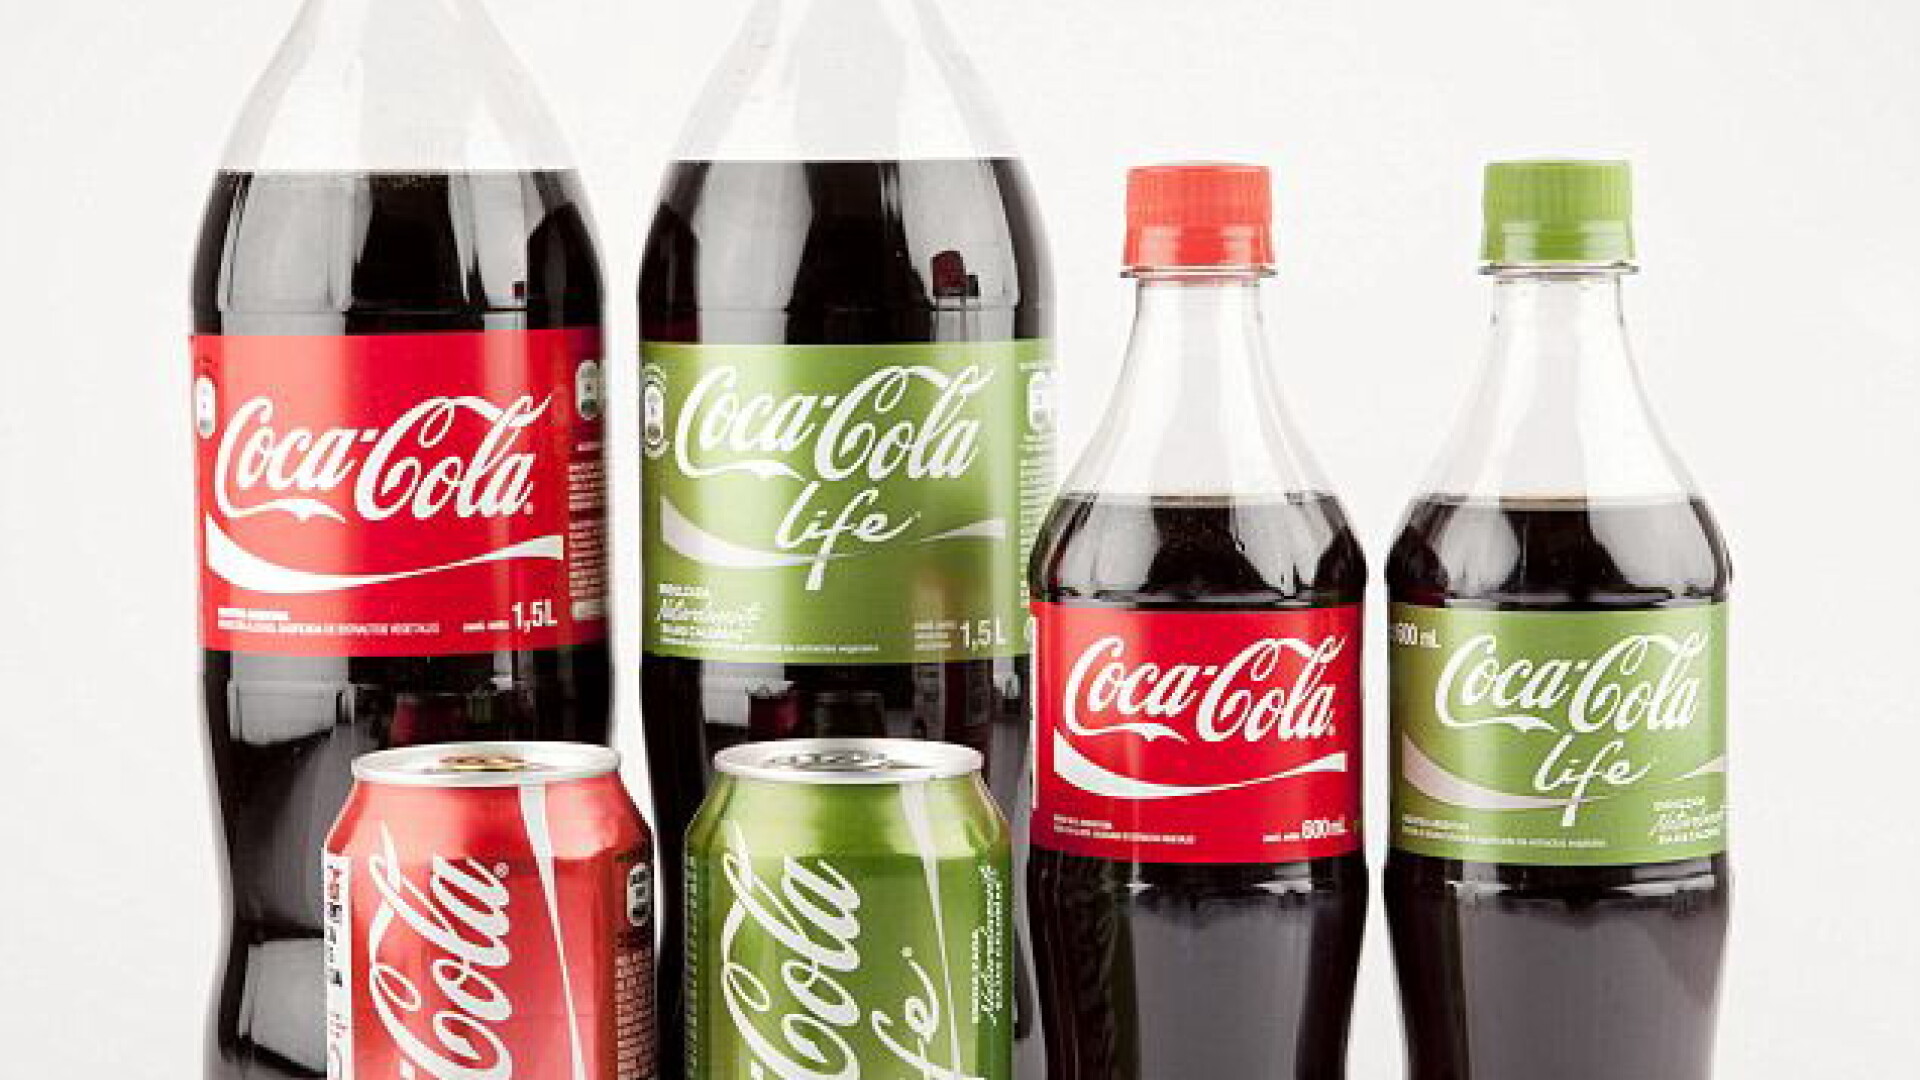 Coca-Cola life